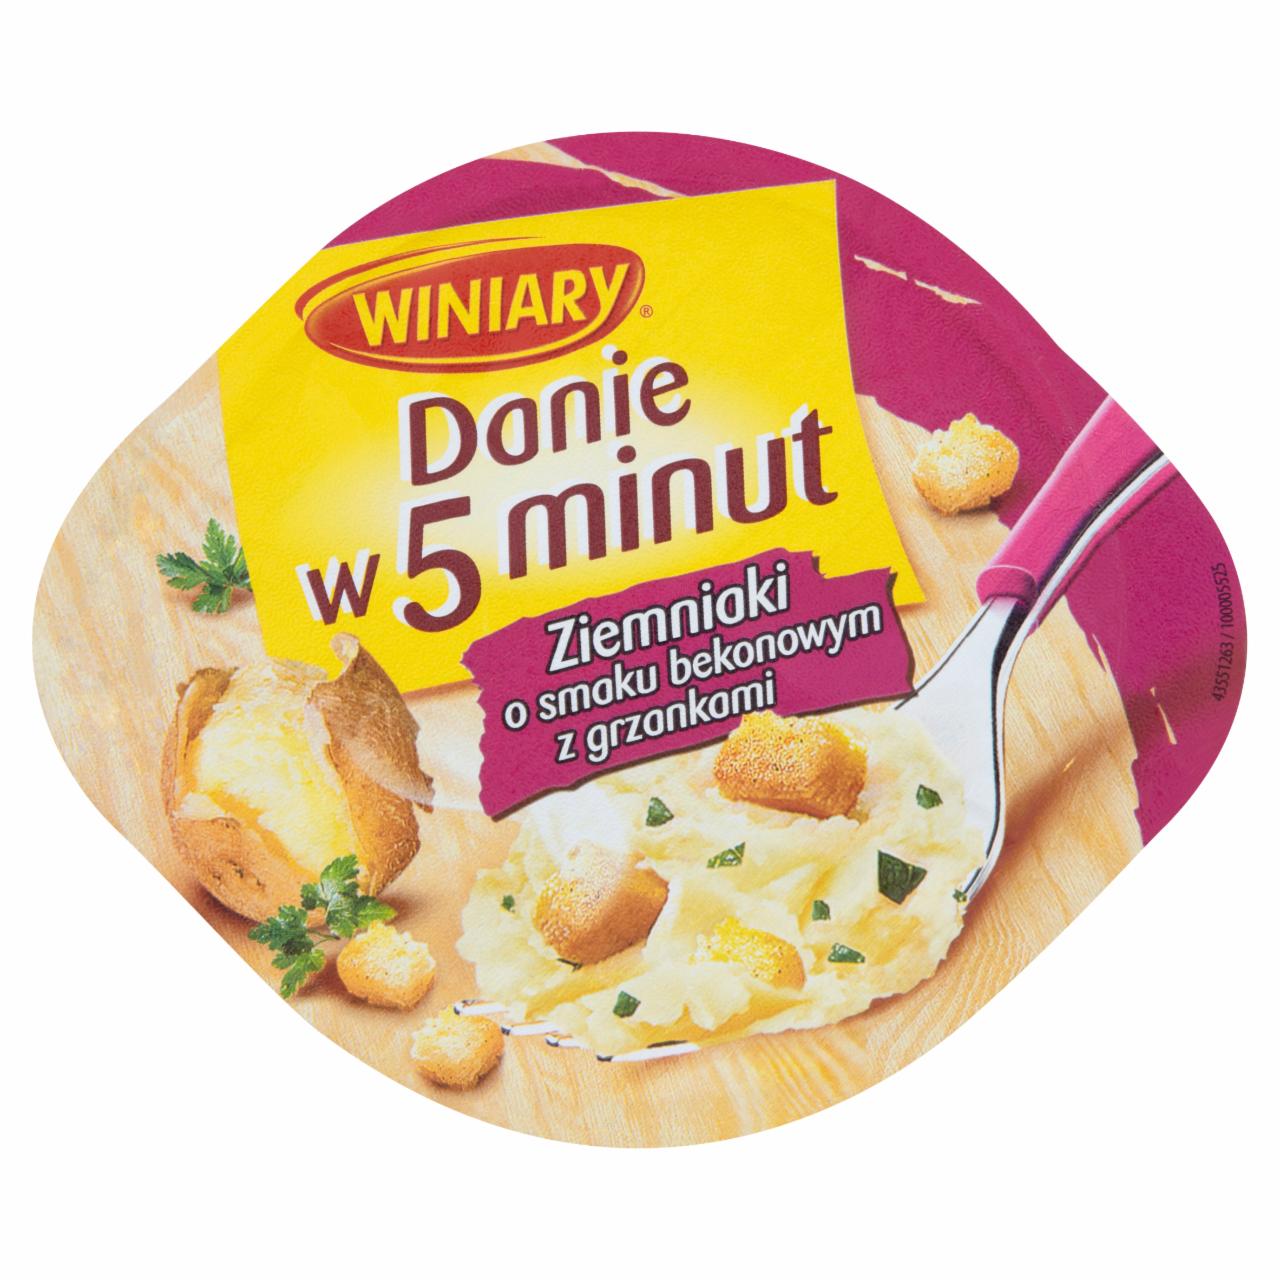 Zdjęcia - Winiary Danie w 5 minut Ziemniaki o smaku bekonowym z grzankami 51 g